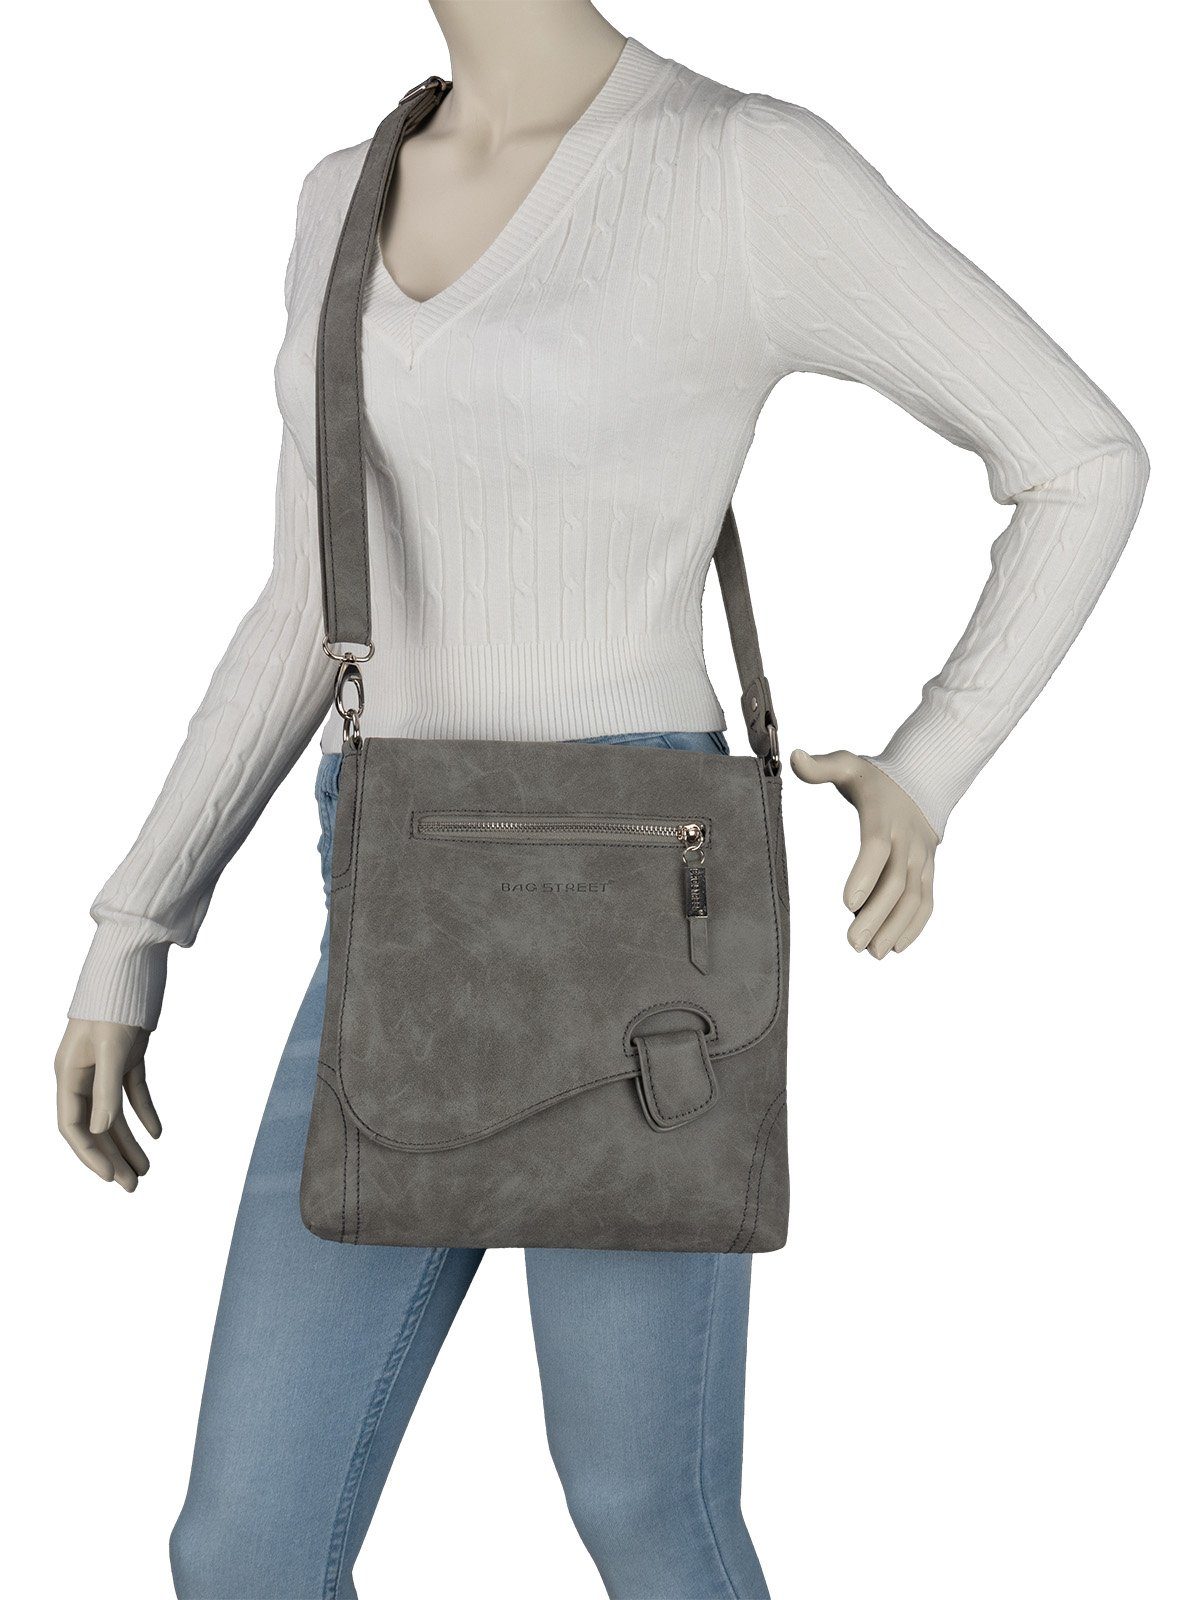 T0104, Schlüsseltasche Umhängetasche Bag GRAU als Schultertasche, STREET tragbar Schultertasche Handtasche Damentasche BAG Street Umhängetasche